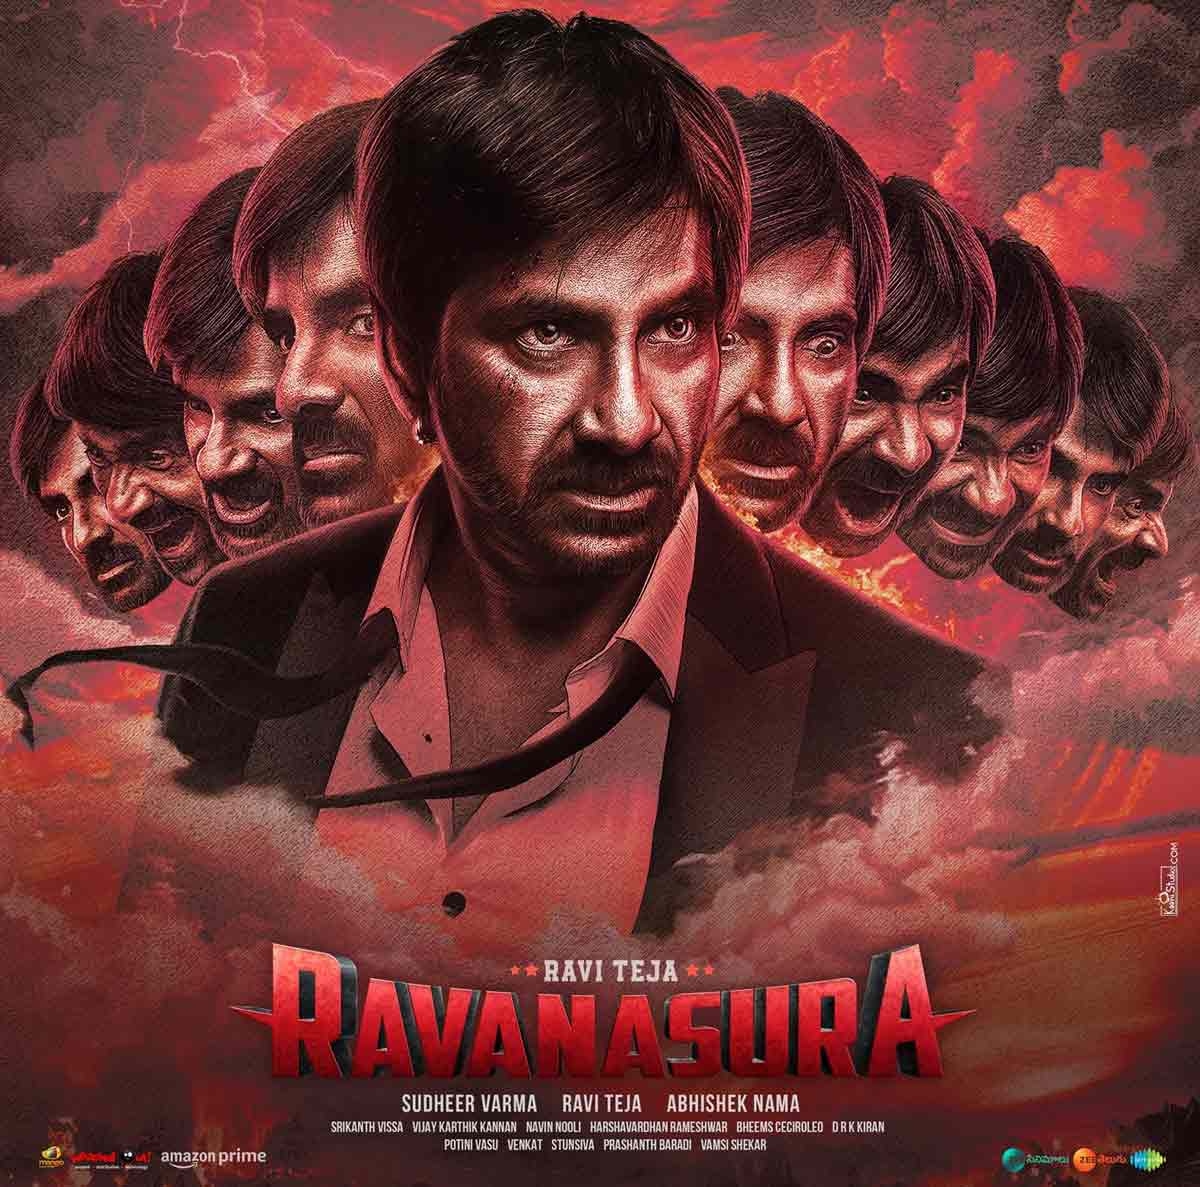 Ravanasura review. Ravanasura Telugu movie review, story, rating ...